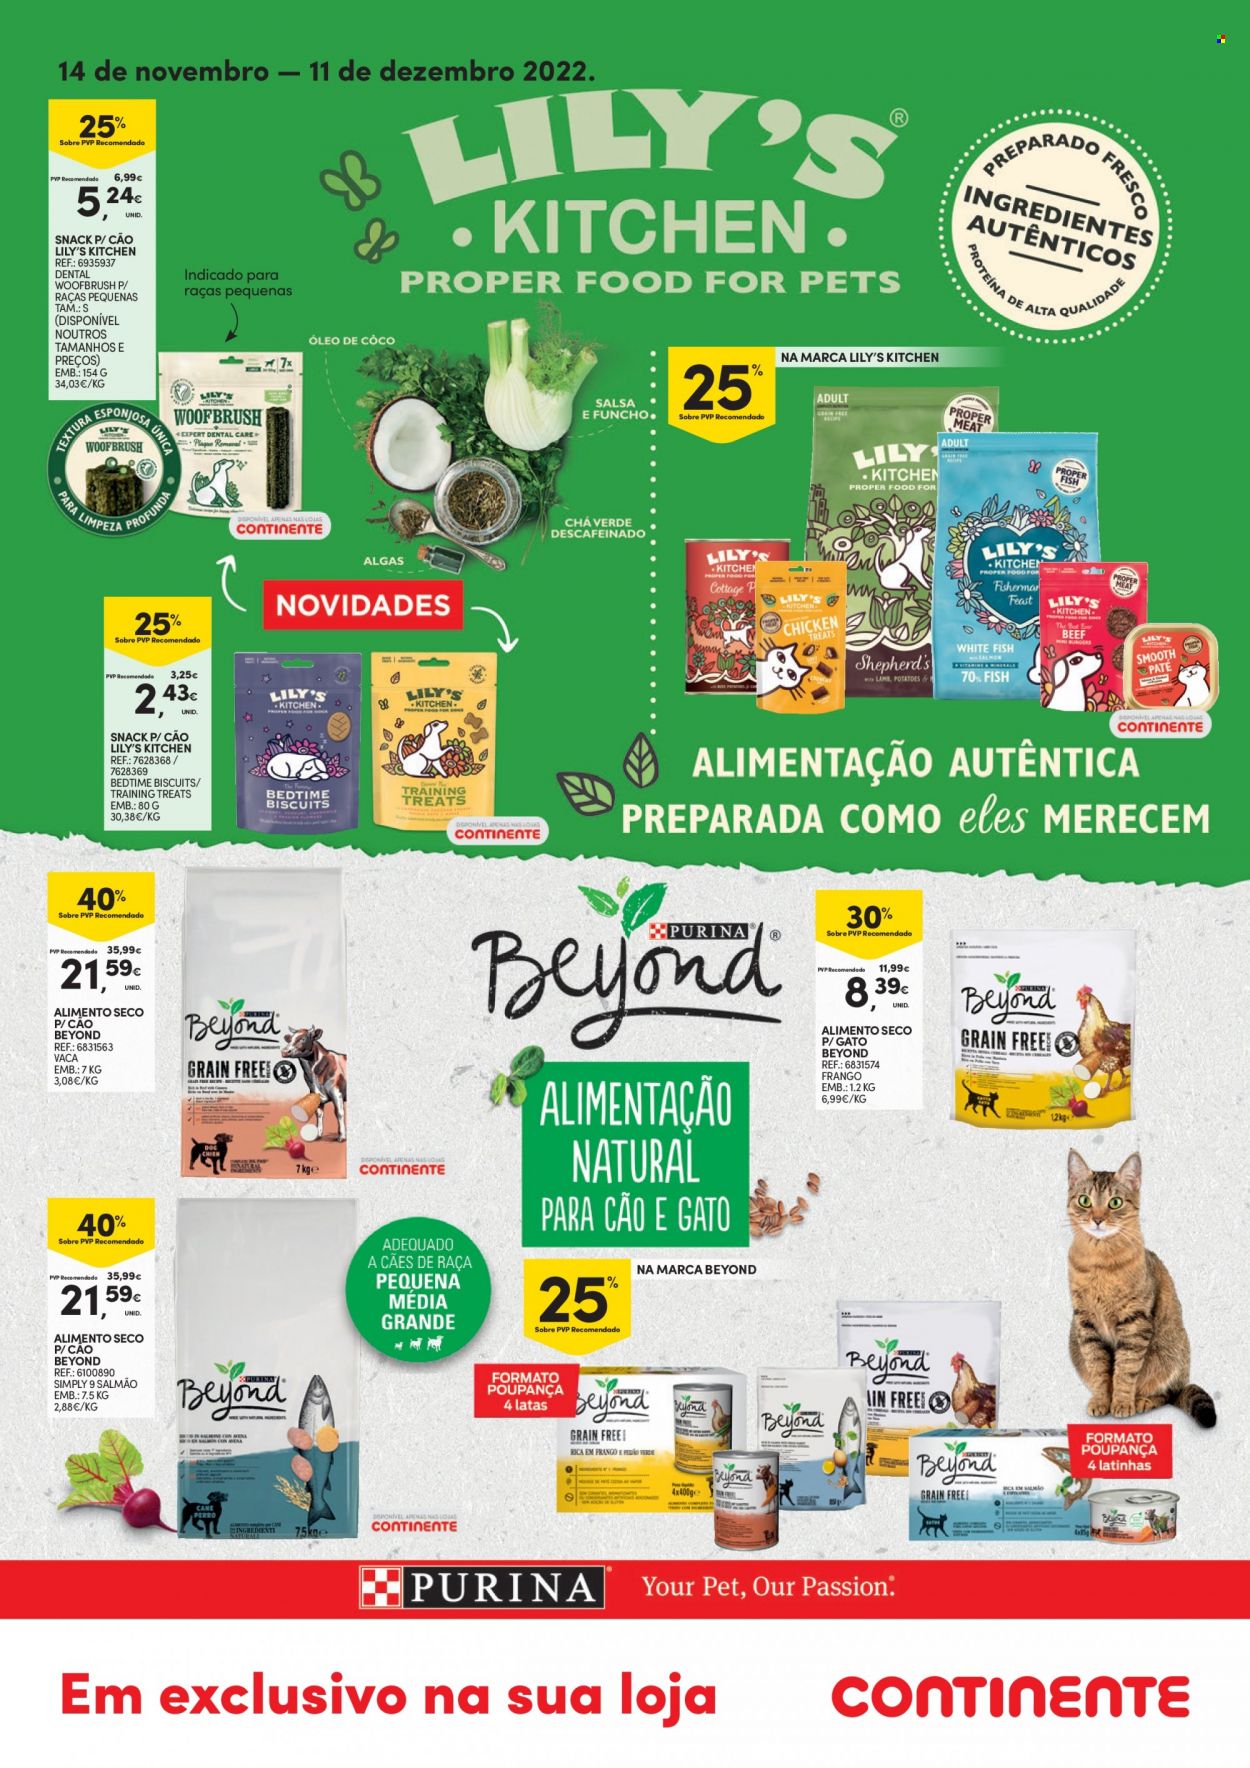 thumbnail - Folheto Continente - 14.11.2022 - 11.12.2022 - Produtos em promoção - alimentos para cães. Página 1.